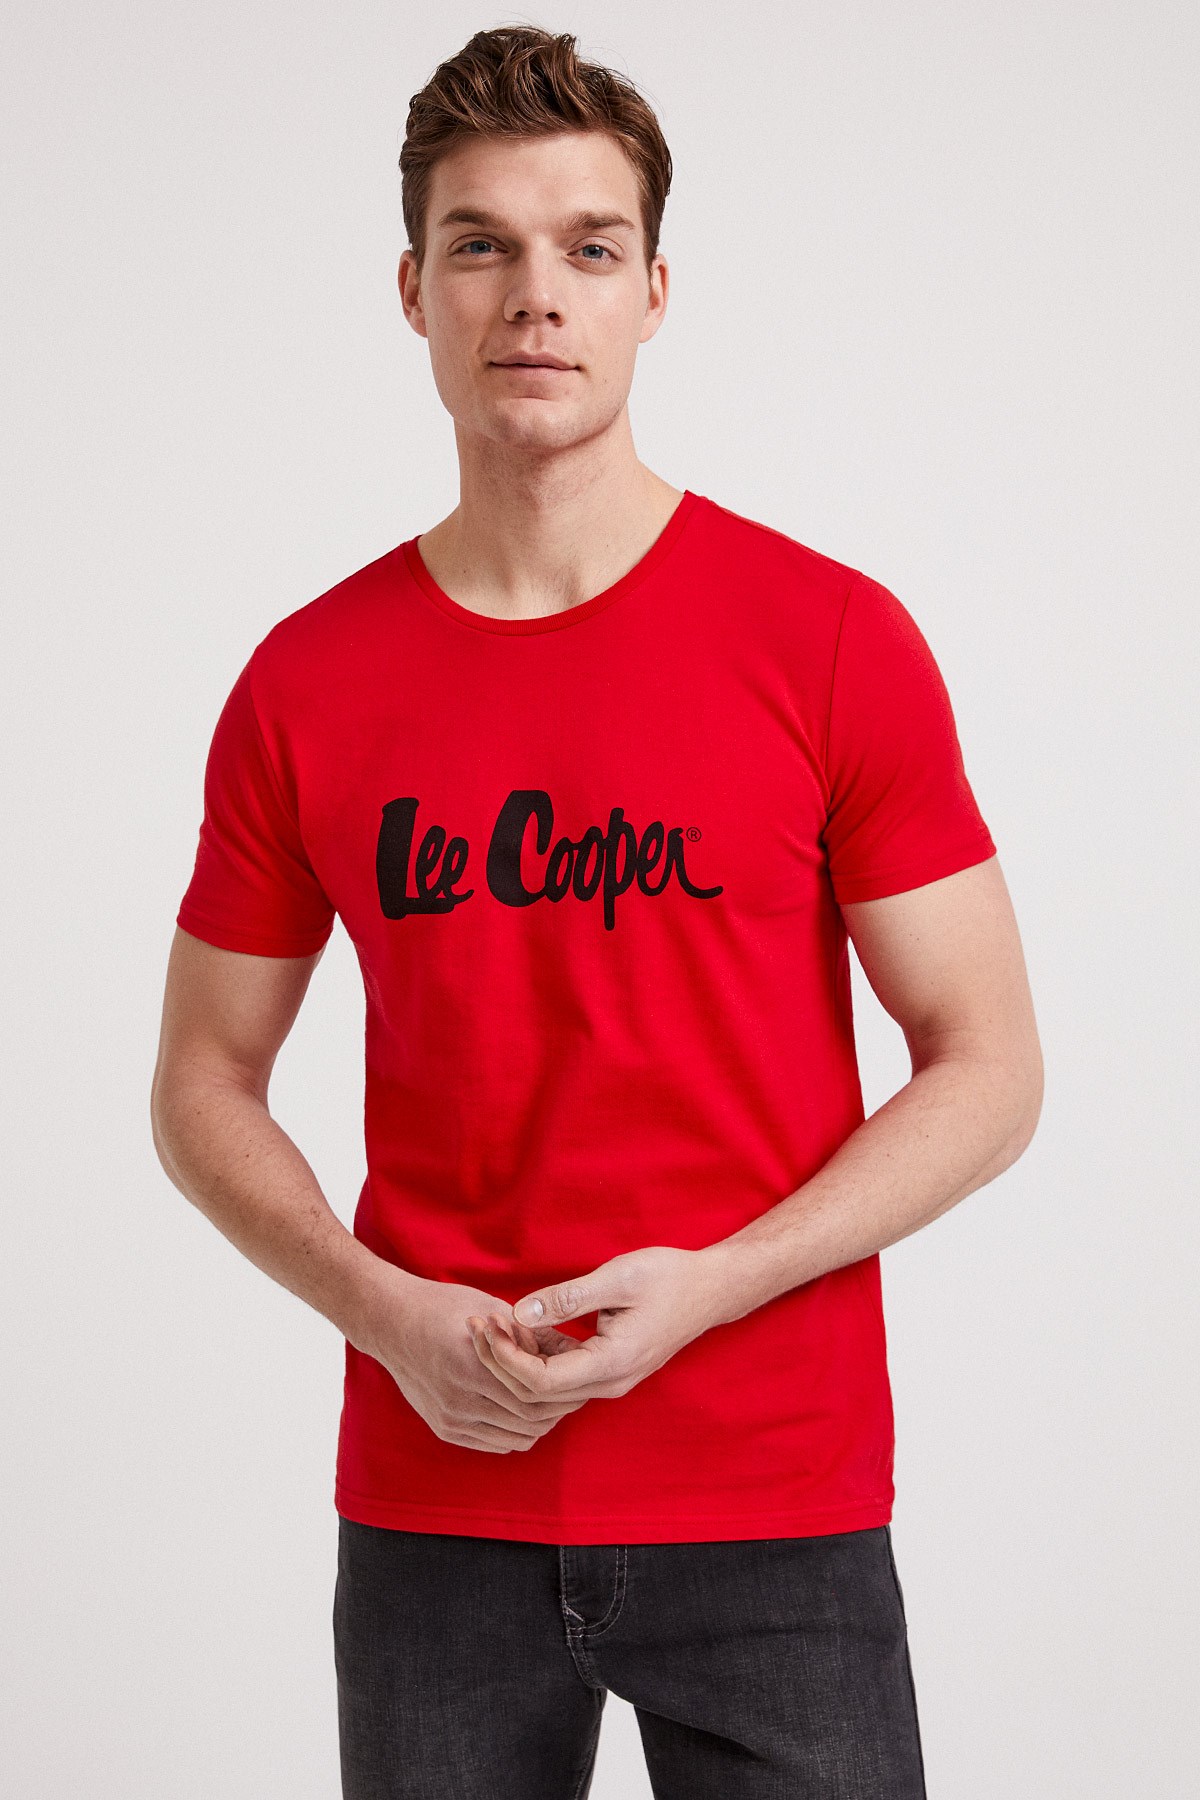 Lee Cooper Erkek T-Shirt 202 LCM 242011 Kırmızı